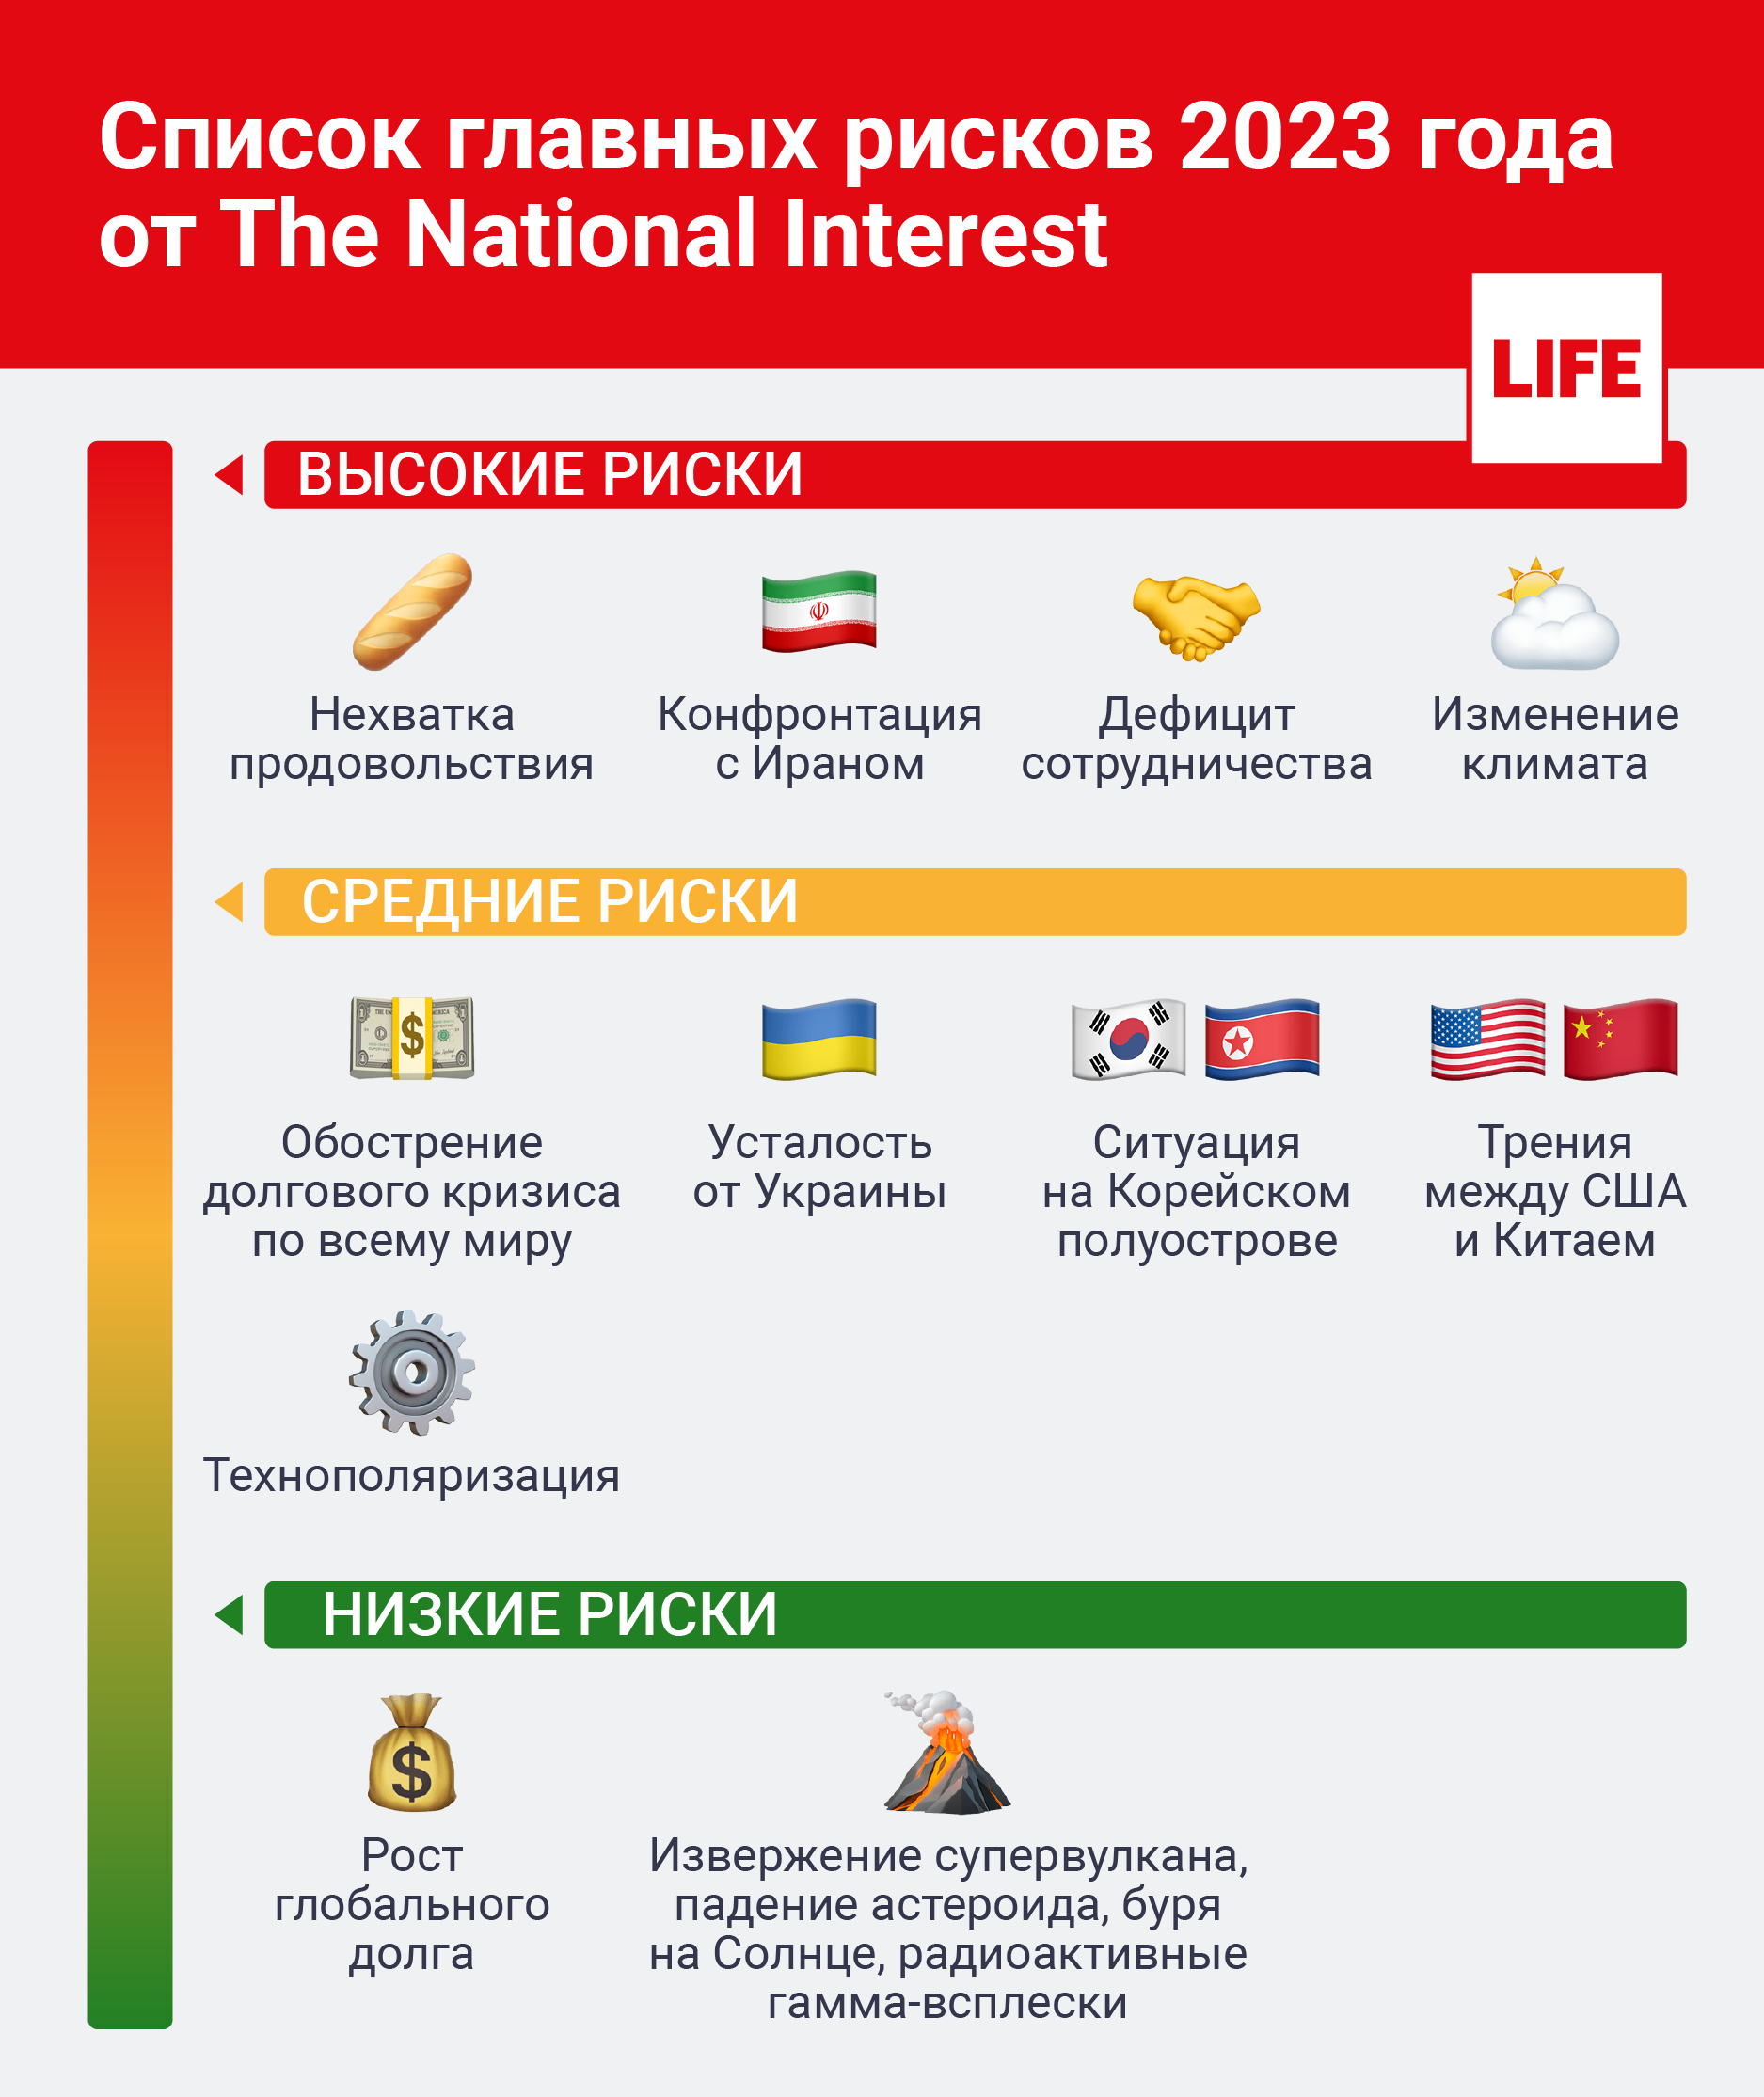 Список главных рисков 2023 года от The National Interest. Инфографика © LIFE